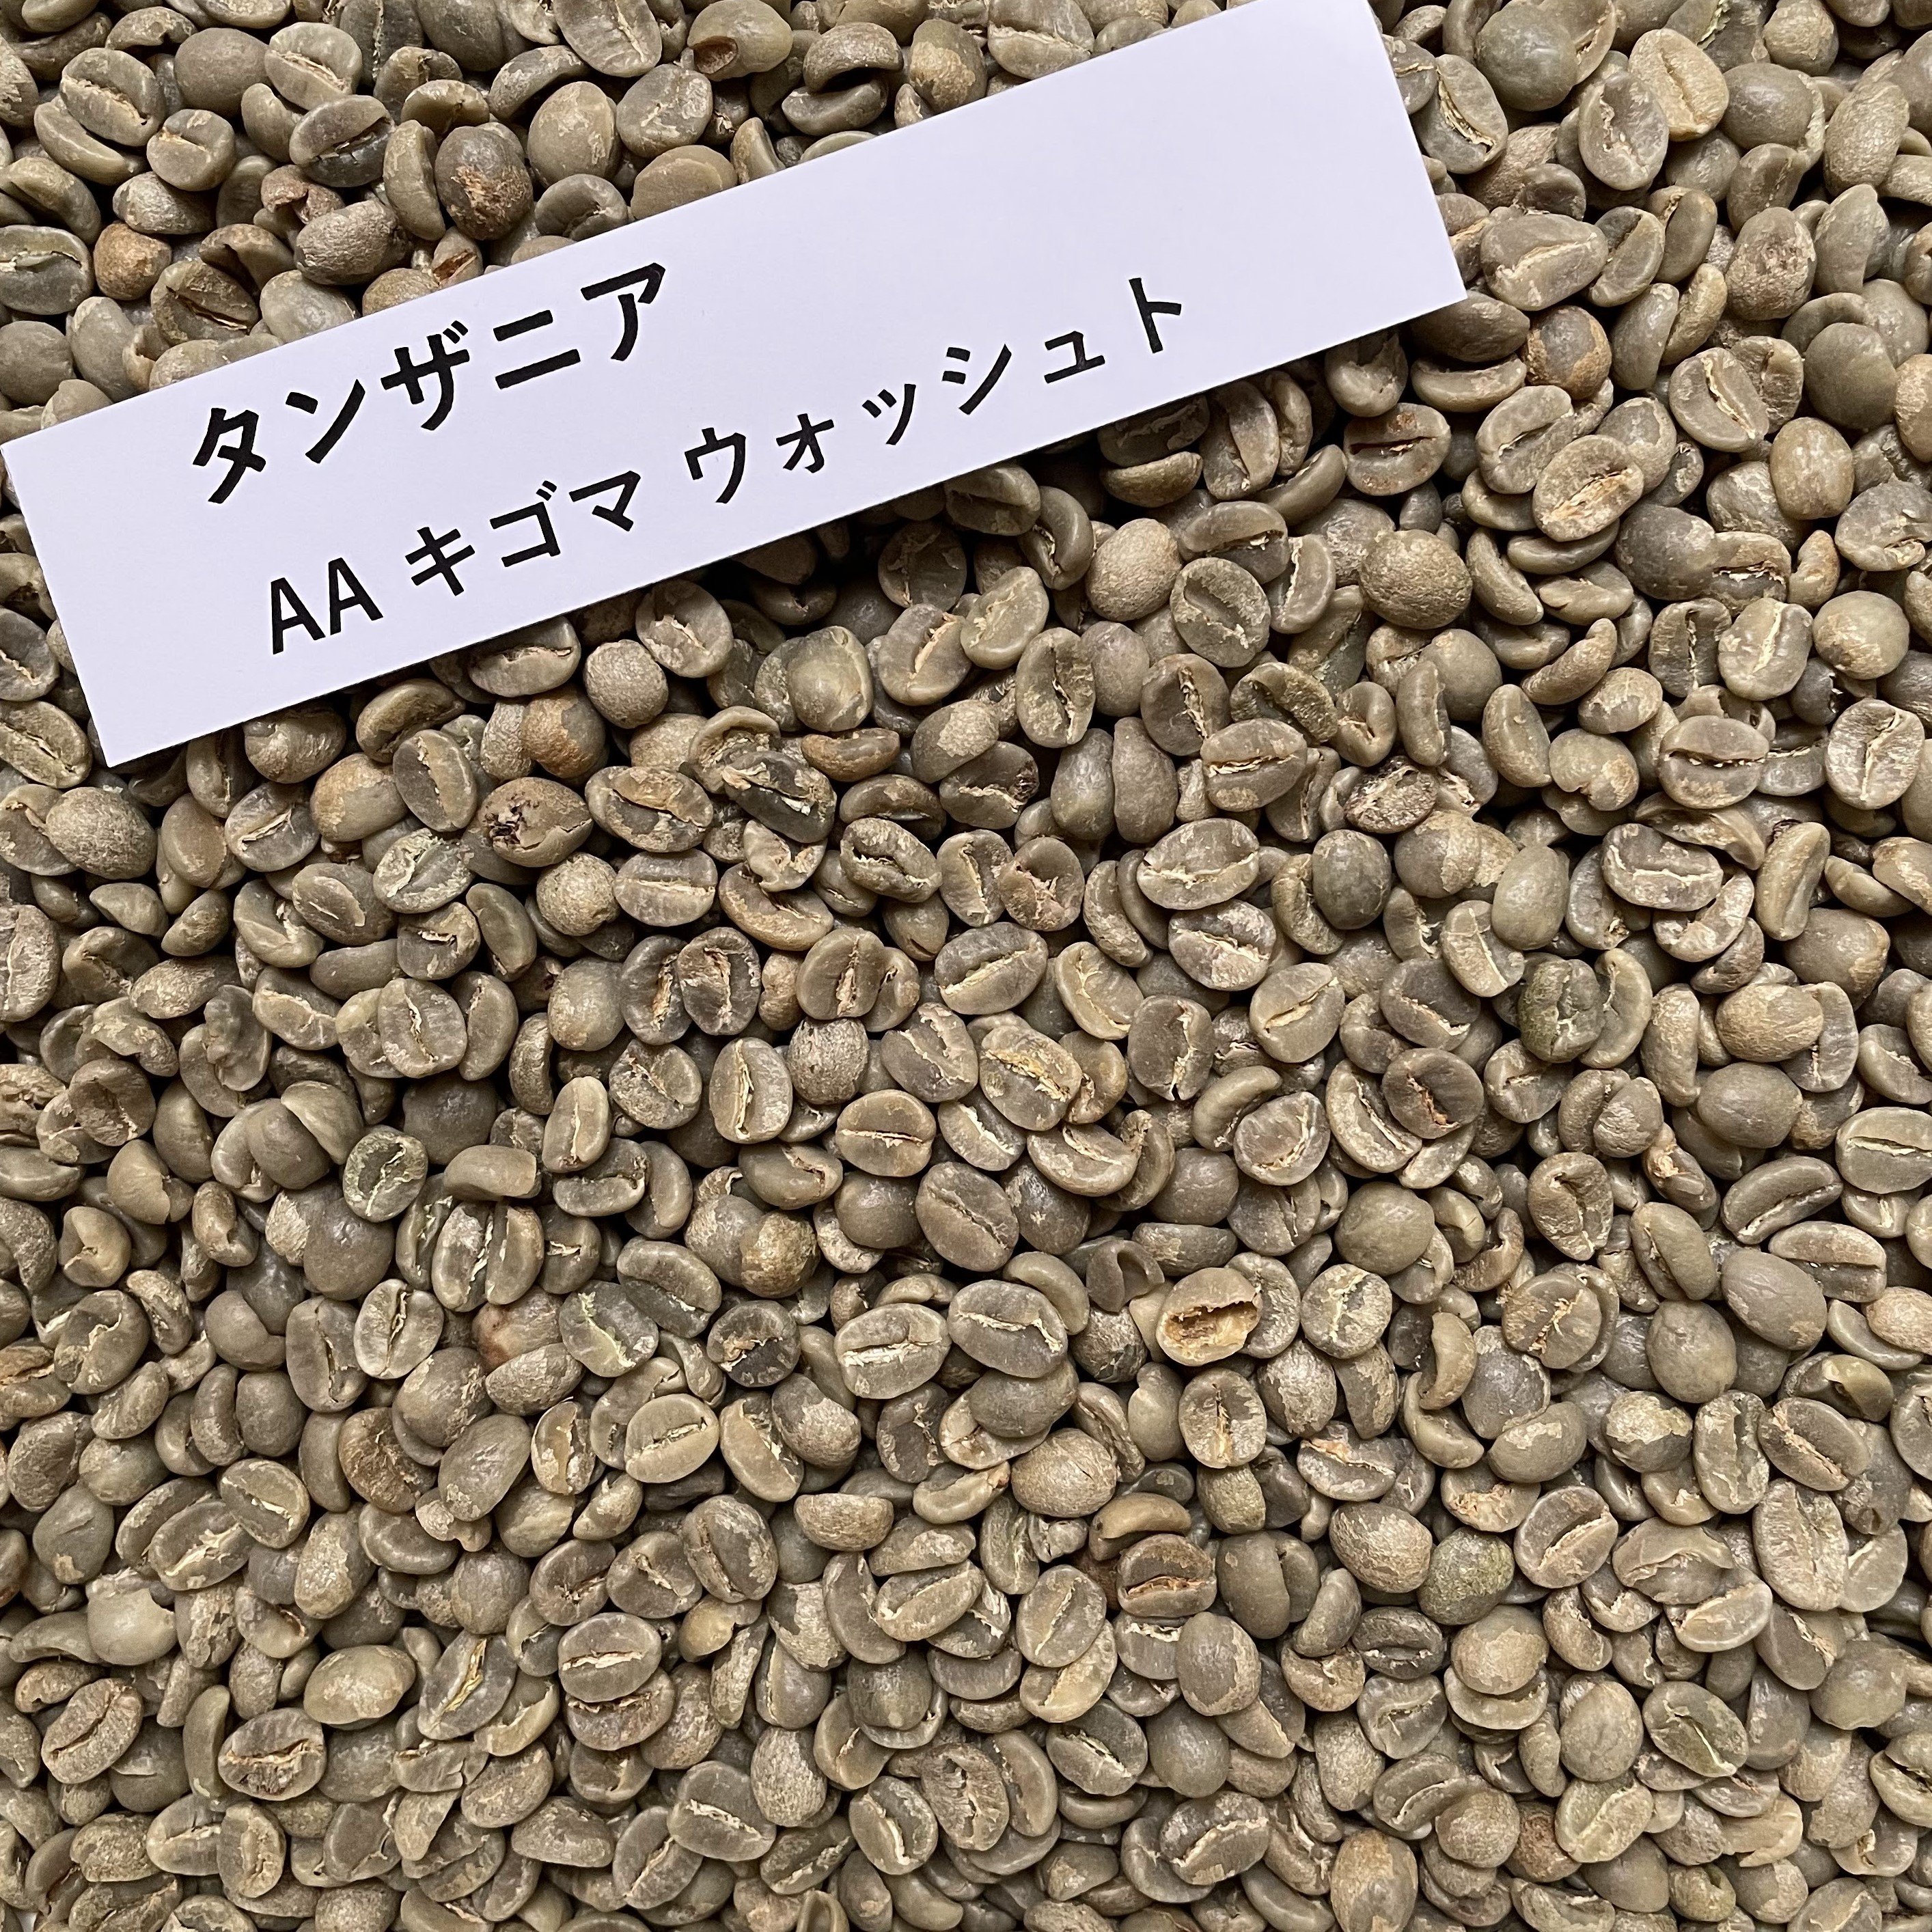 コーヒー生豆 タンザニアAA キゴマ プレミアム ウォッシュト 1kg 栽培